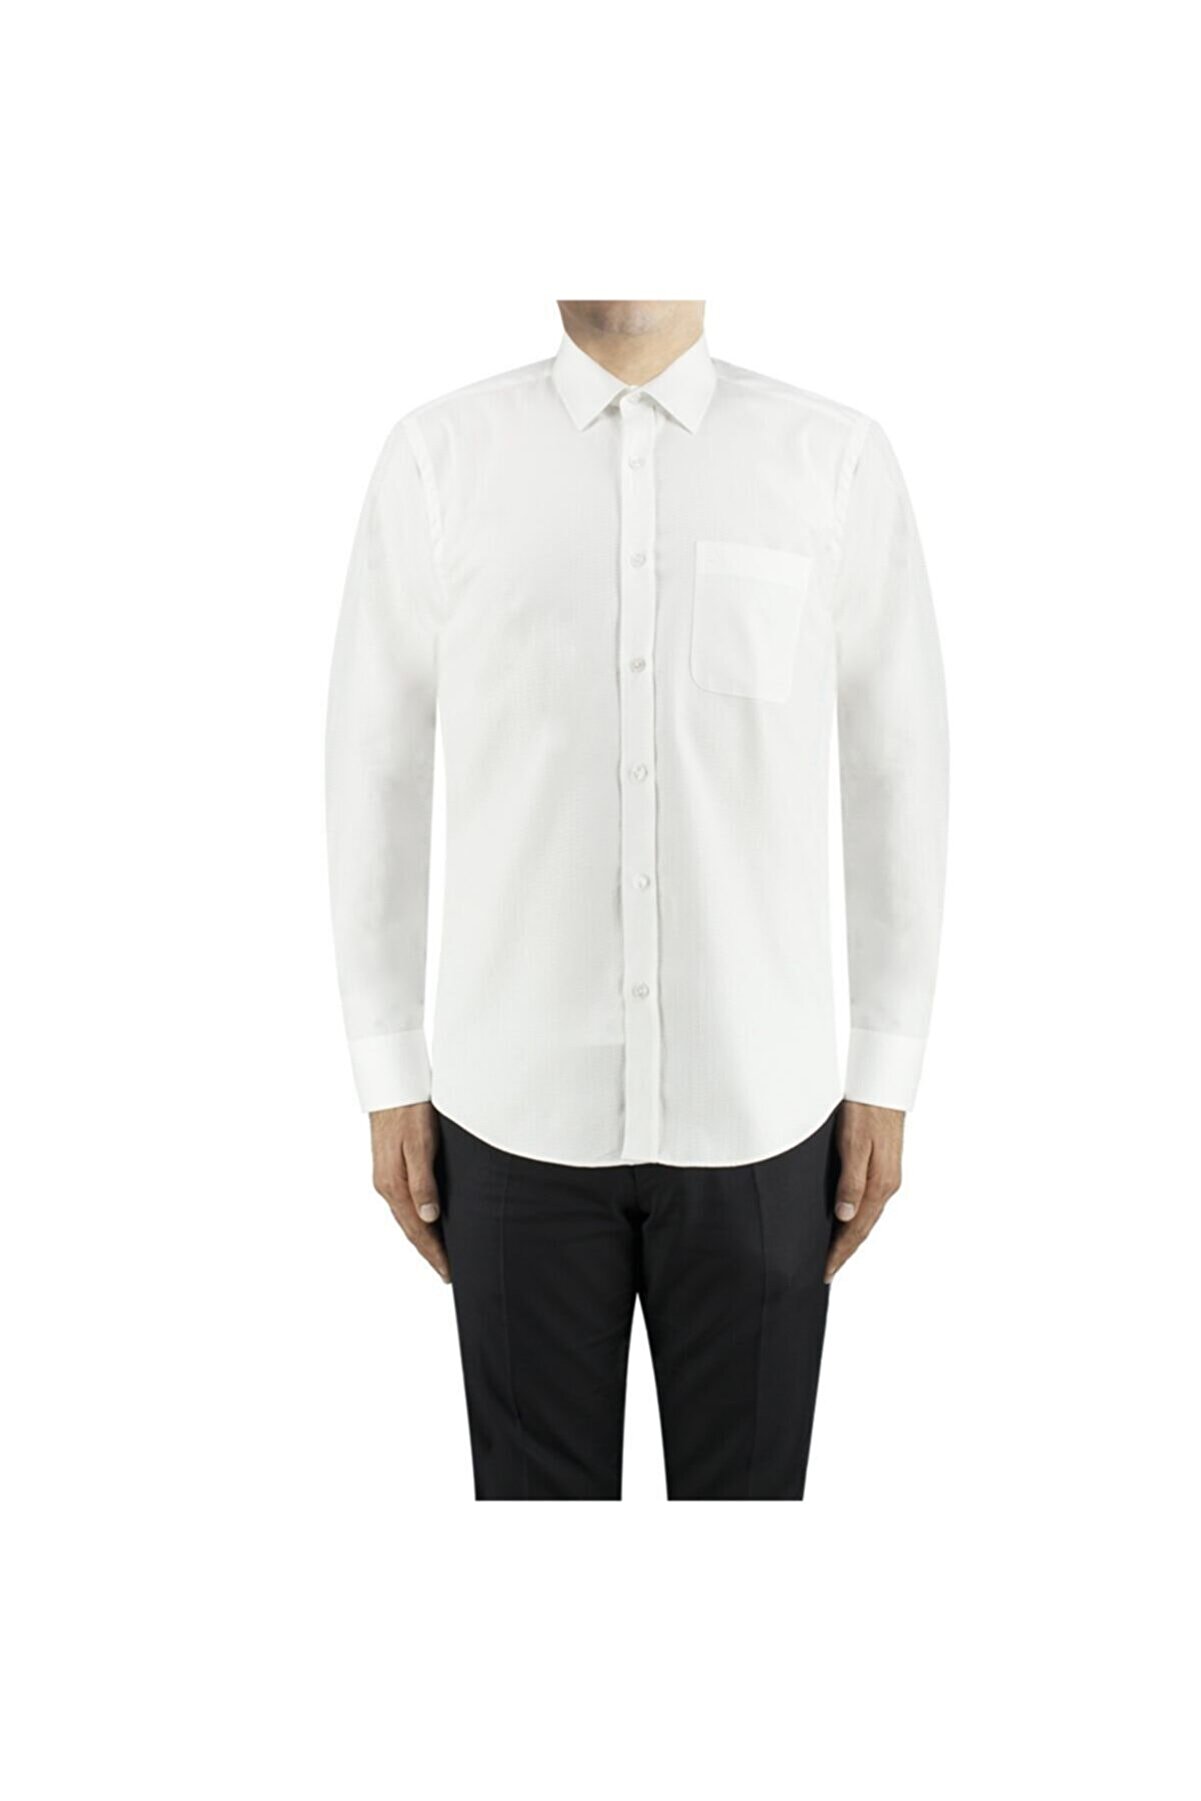 Sarar Pisa Beyaz Gömlek